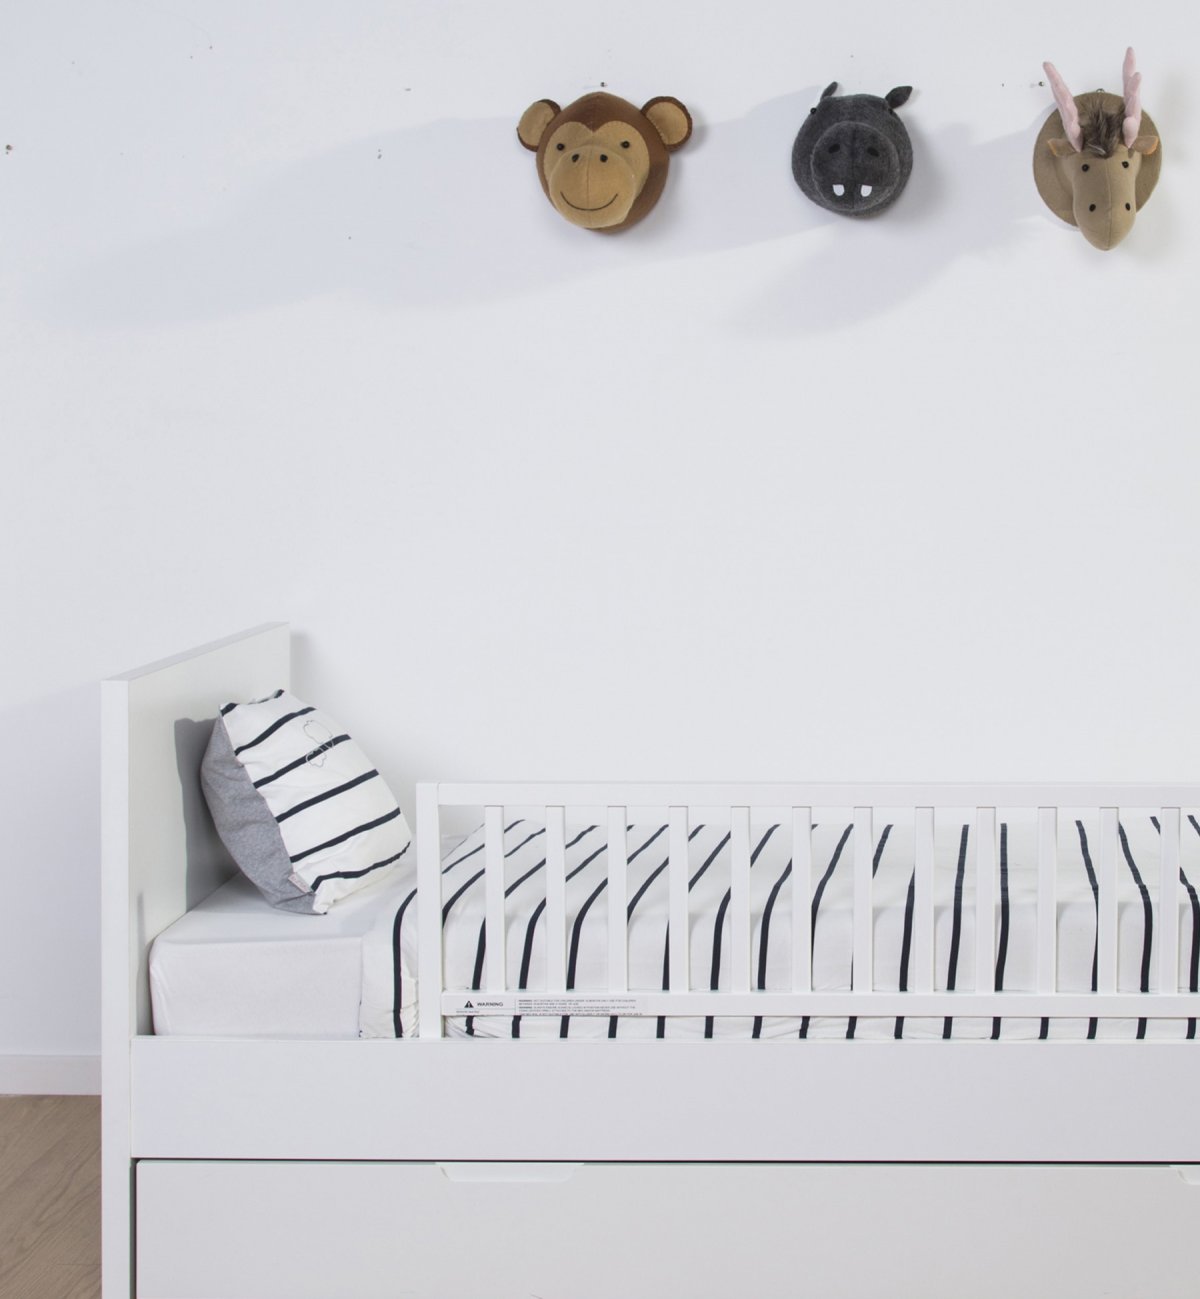 Barreras de cama para Niños - Bebiños, Tienda online